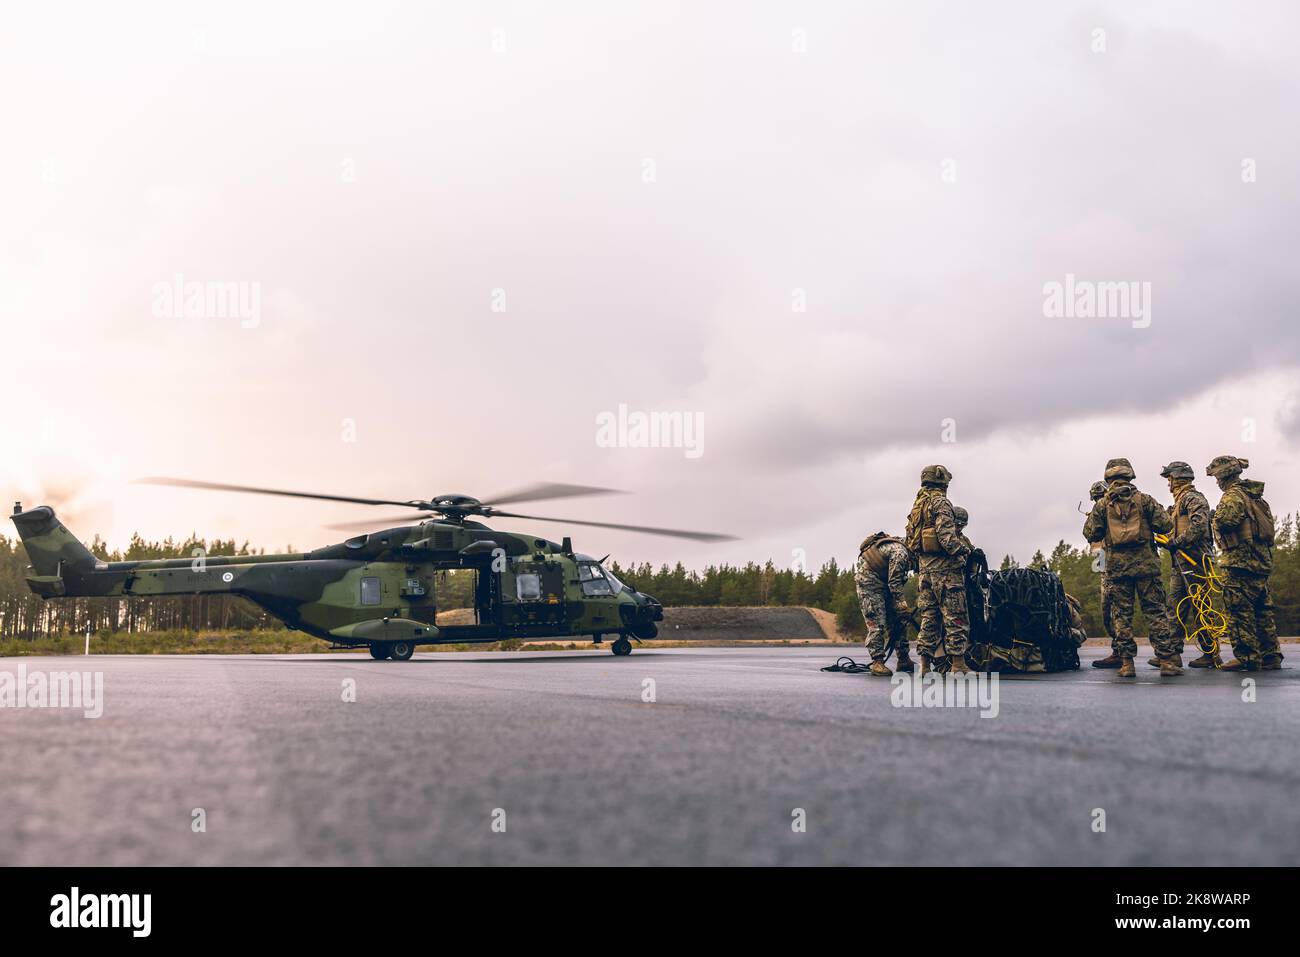 US-Marineinfanteristen mit Kampflogistikbataillon 6 (CLB-6), Kampflogistikregiment 2, 2. Marine Logistics Group und finnische Soldaten mit Hubschrauberbataillon, Utti Jaeger Regiment, beenden den Frachtlift-Betrieb während einer Nachversorgung des Hubschrauberteams zur Vorbereitung auf die Übung Frostwind 22 in Syndalen, Finnland, 18. Oktober 2022. Die Task Force Red Cloud mit Sitz von Elements of CLB-6 wird nach Finnland eingesetzt, um die Übungen SYD 2022 und Freezing Winds 2022 zu unterstützen, um die gegenseitige Abhängigkeit der US-amerikanischen und finnischen Selektieren im maritimen Bereich zu verbessern und das bilaterale maritime Manöver innerhalb der Fin zu festigen Stockfoto